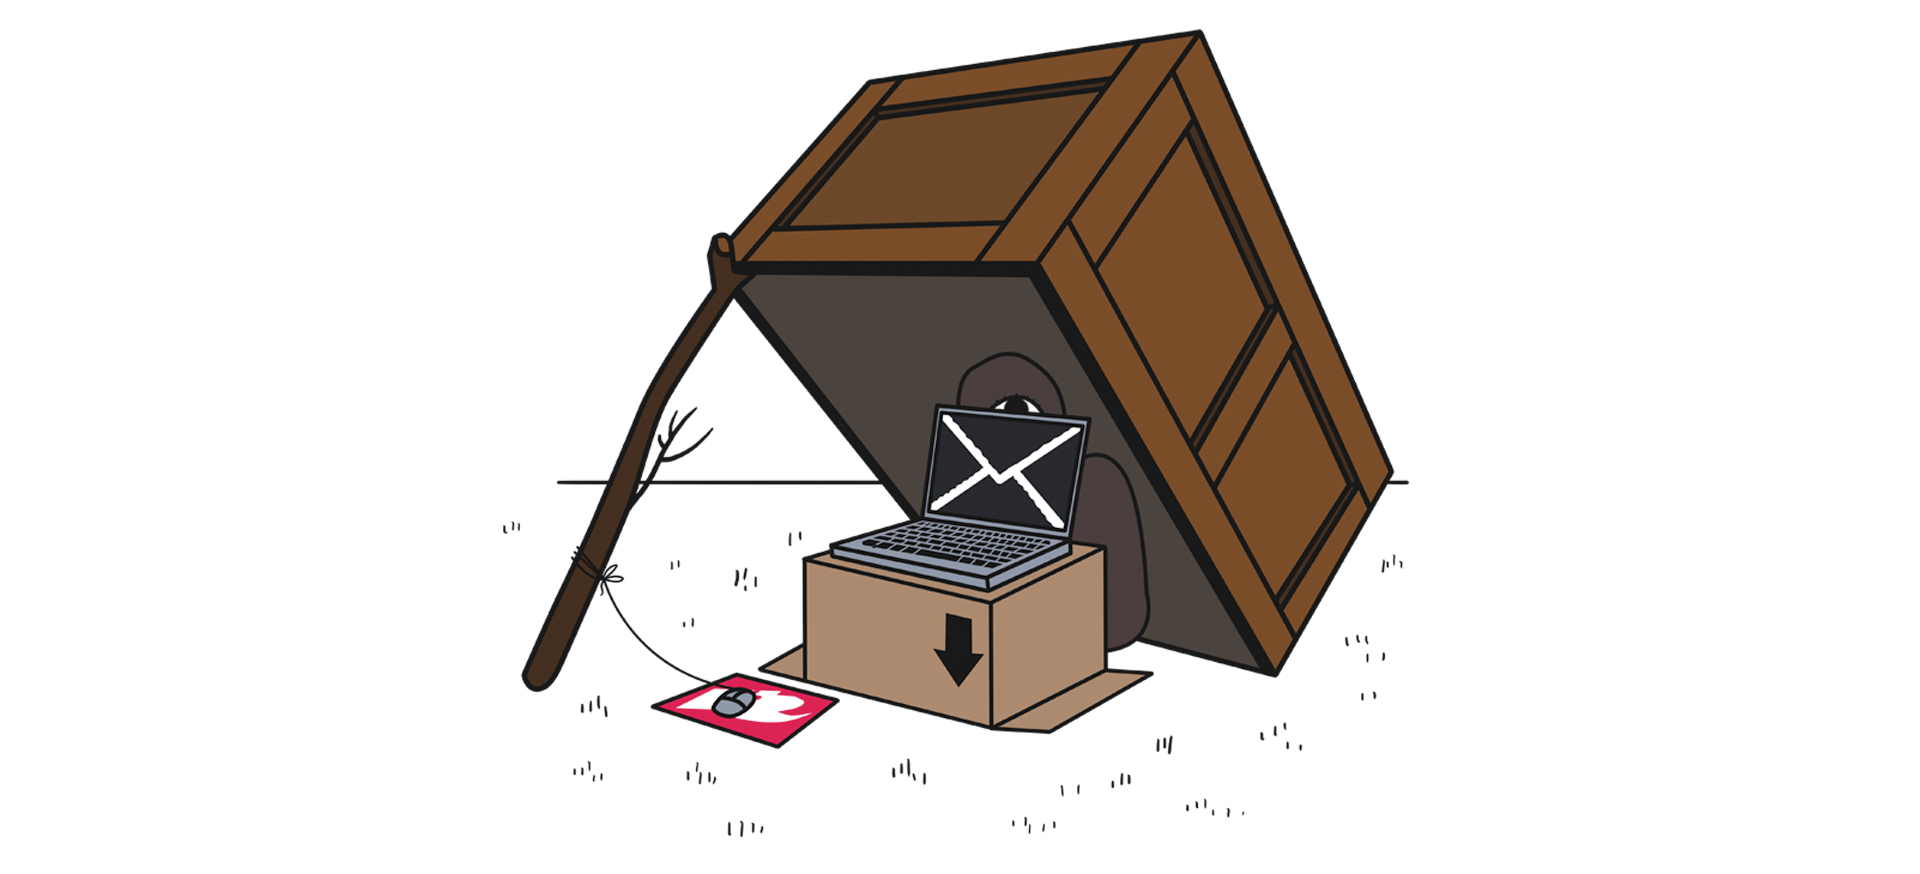 Illustratie van een houten krat-val met een laptop er in